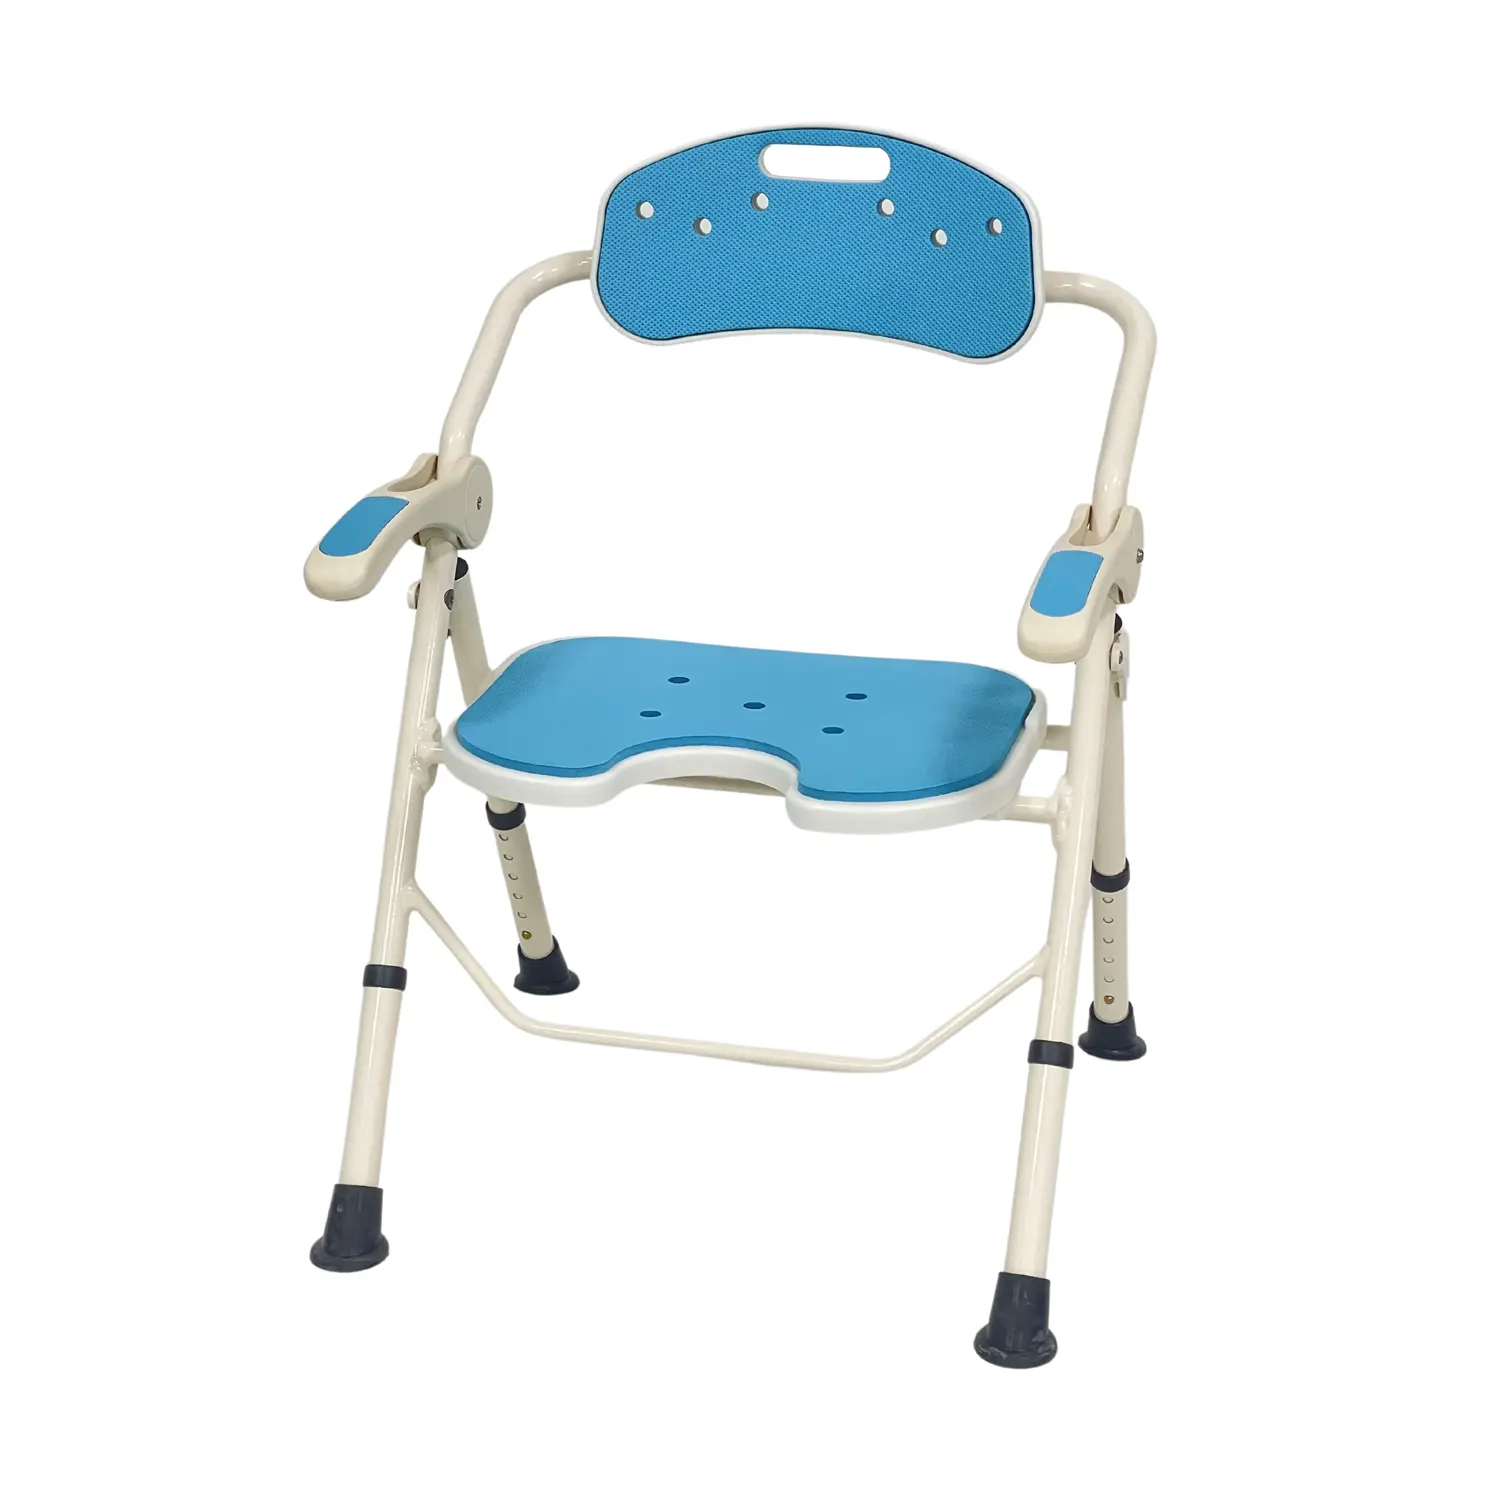 Silla de baño de Color azul de altura ajustable Bliss Medical, silla de baño, silla de ducha portátil para discapacitados con reposabrazos